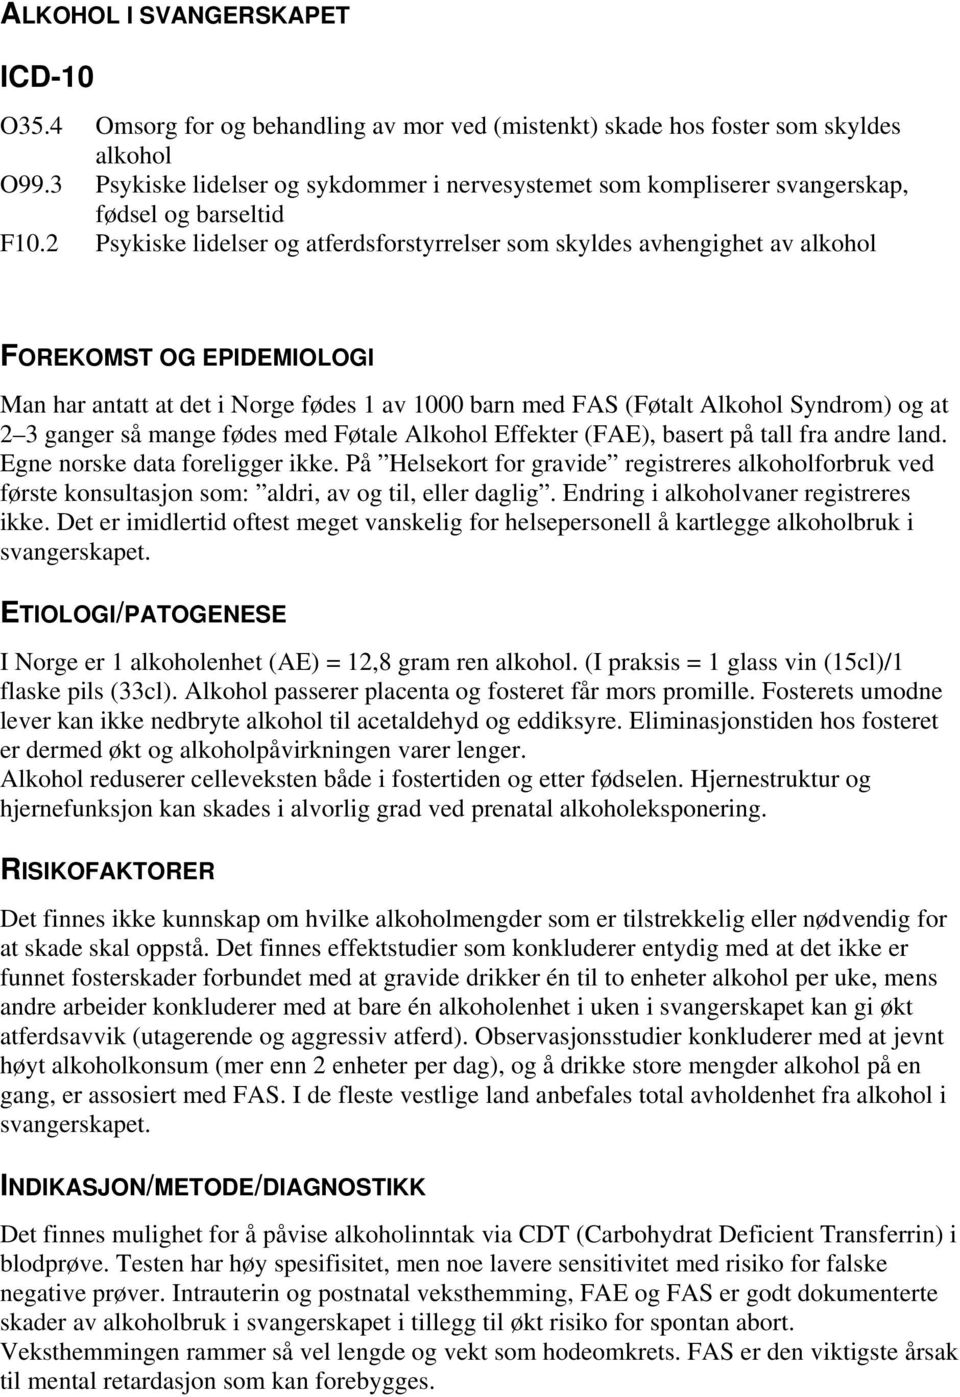 2 Psykiske lidelser og atferdsforstyrrelser som skyldes avhengighet av alkohol FOREKOMST OG EPIDEMIOLOGI Man har antatt at det i Norge fødes 1 av 1000 barn med FAS (Føtalt Alkohol Syndrom) og at 2 3